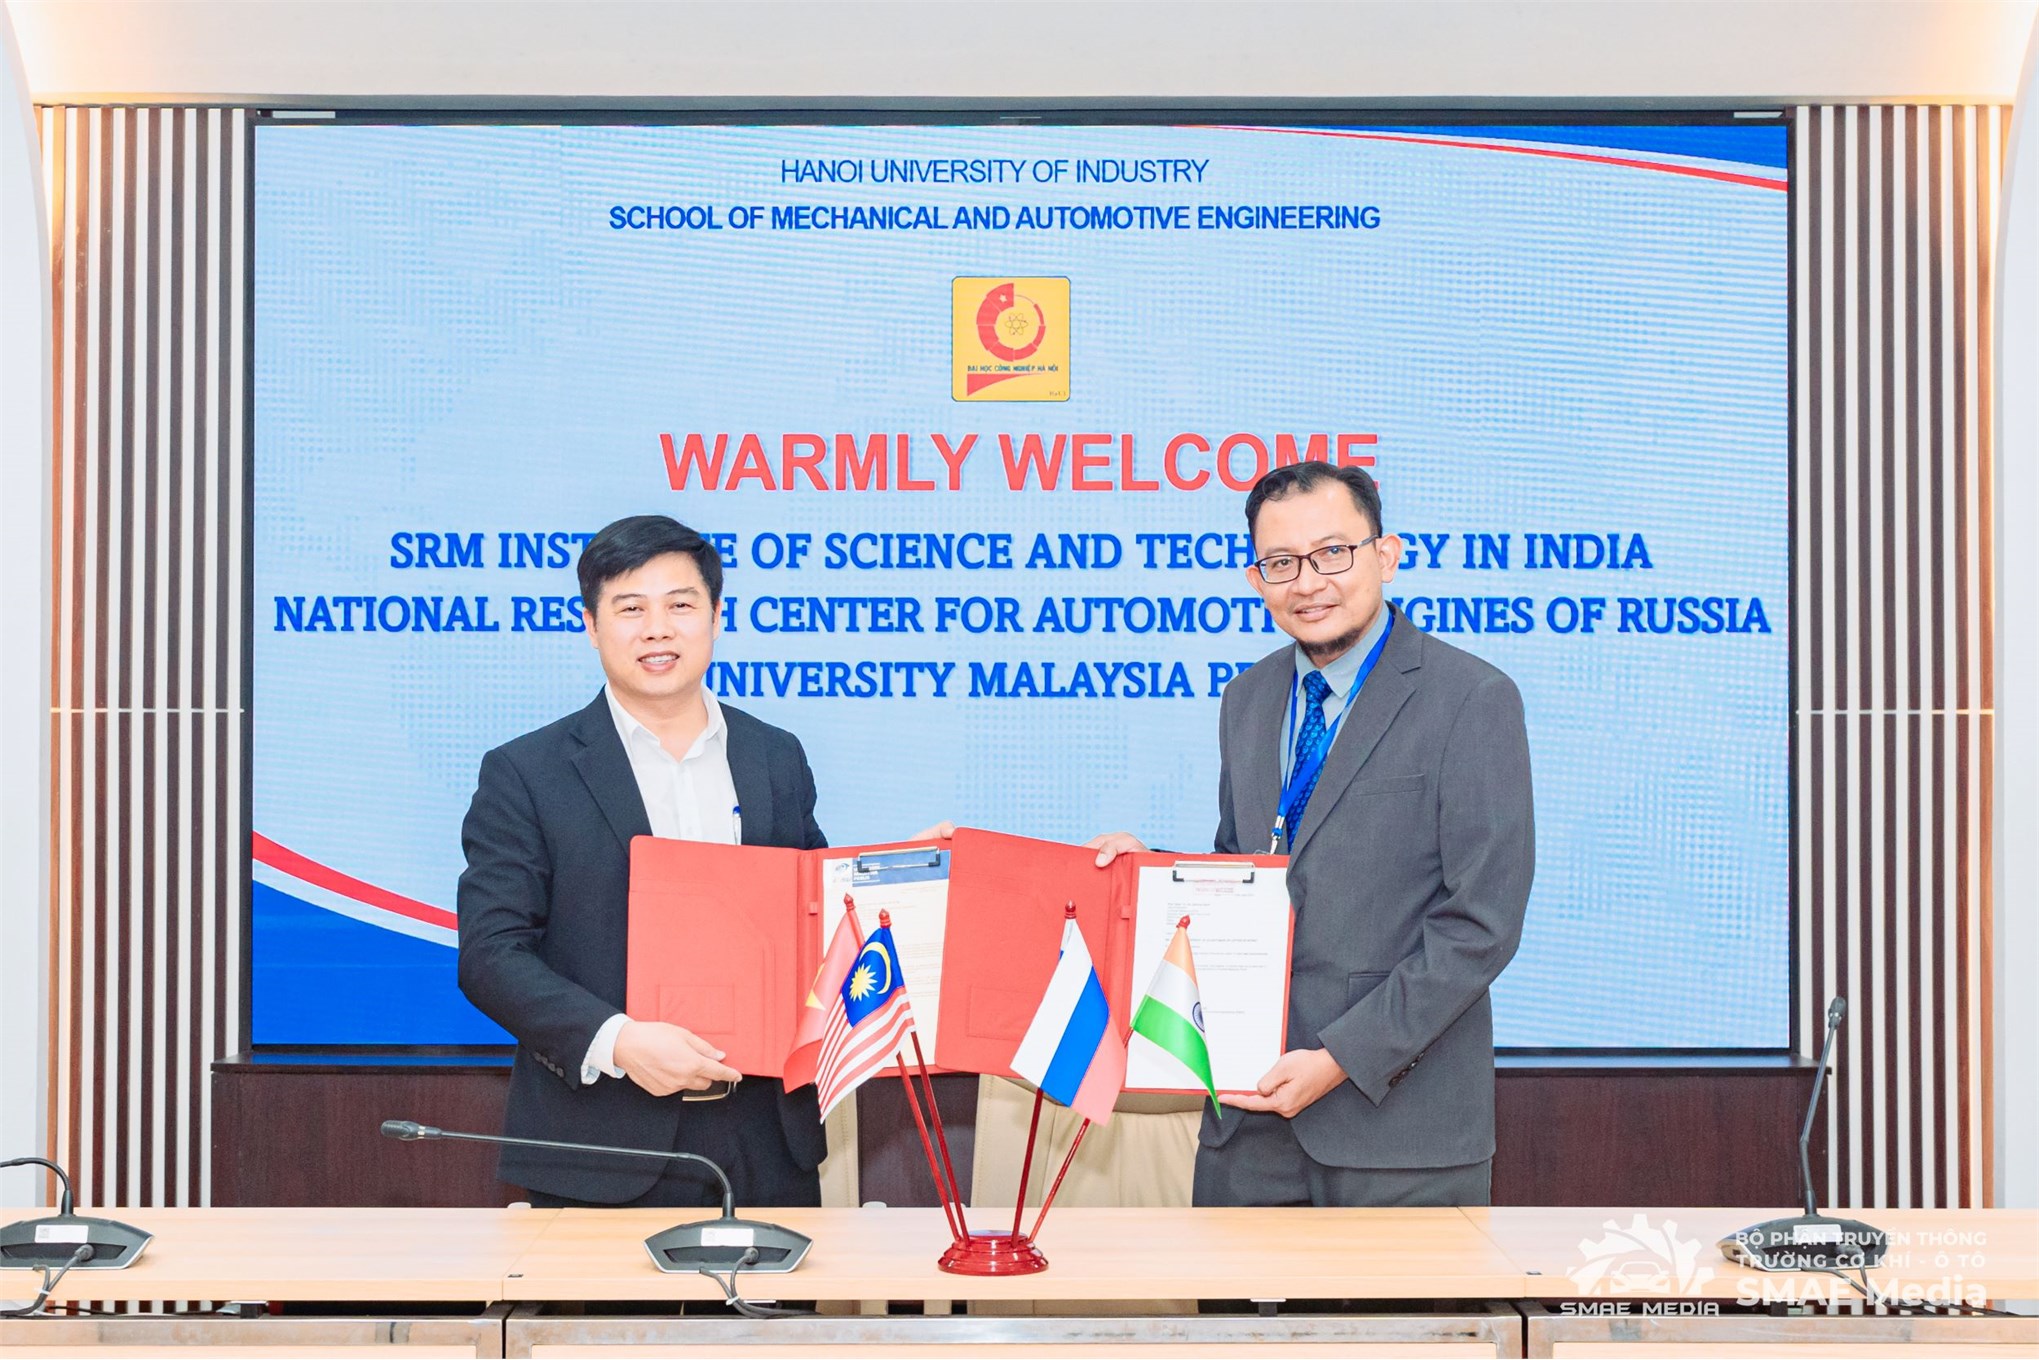 Trường Cơ khí – Ô tô, Đại học Công nghiệp Hà Nội đẩy mạnh hợp tác về đào tạo, khoa học công nghệ với các trường Đại học, Viện khoa học công nghệ của Liên Bang Nga, Ấn Độ và Malaysia.